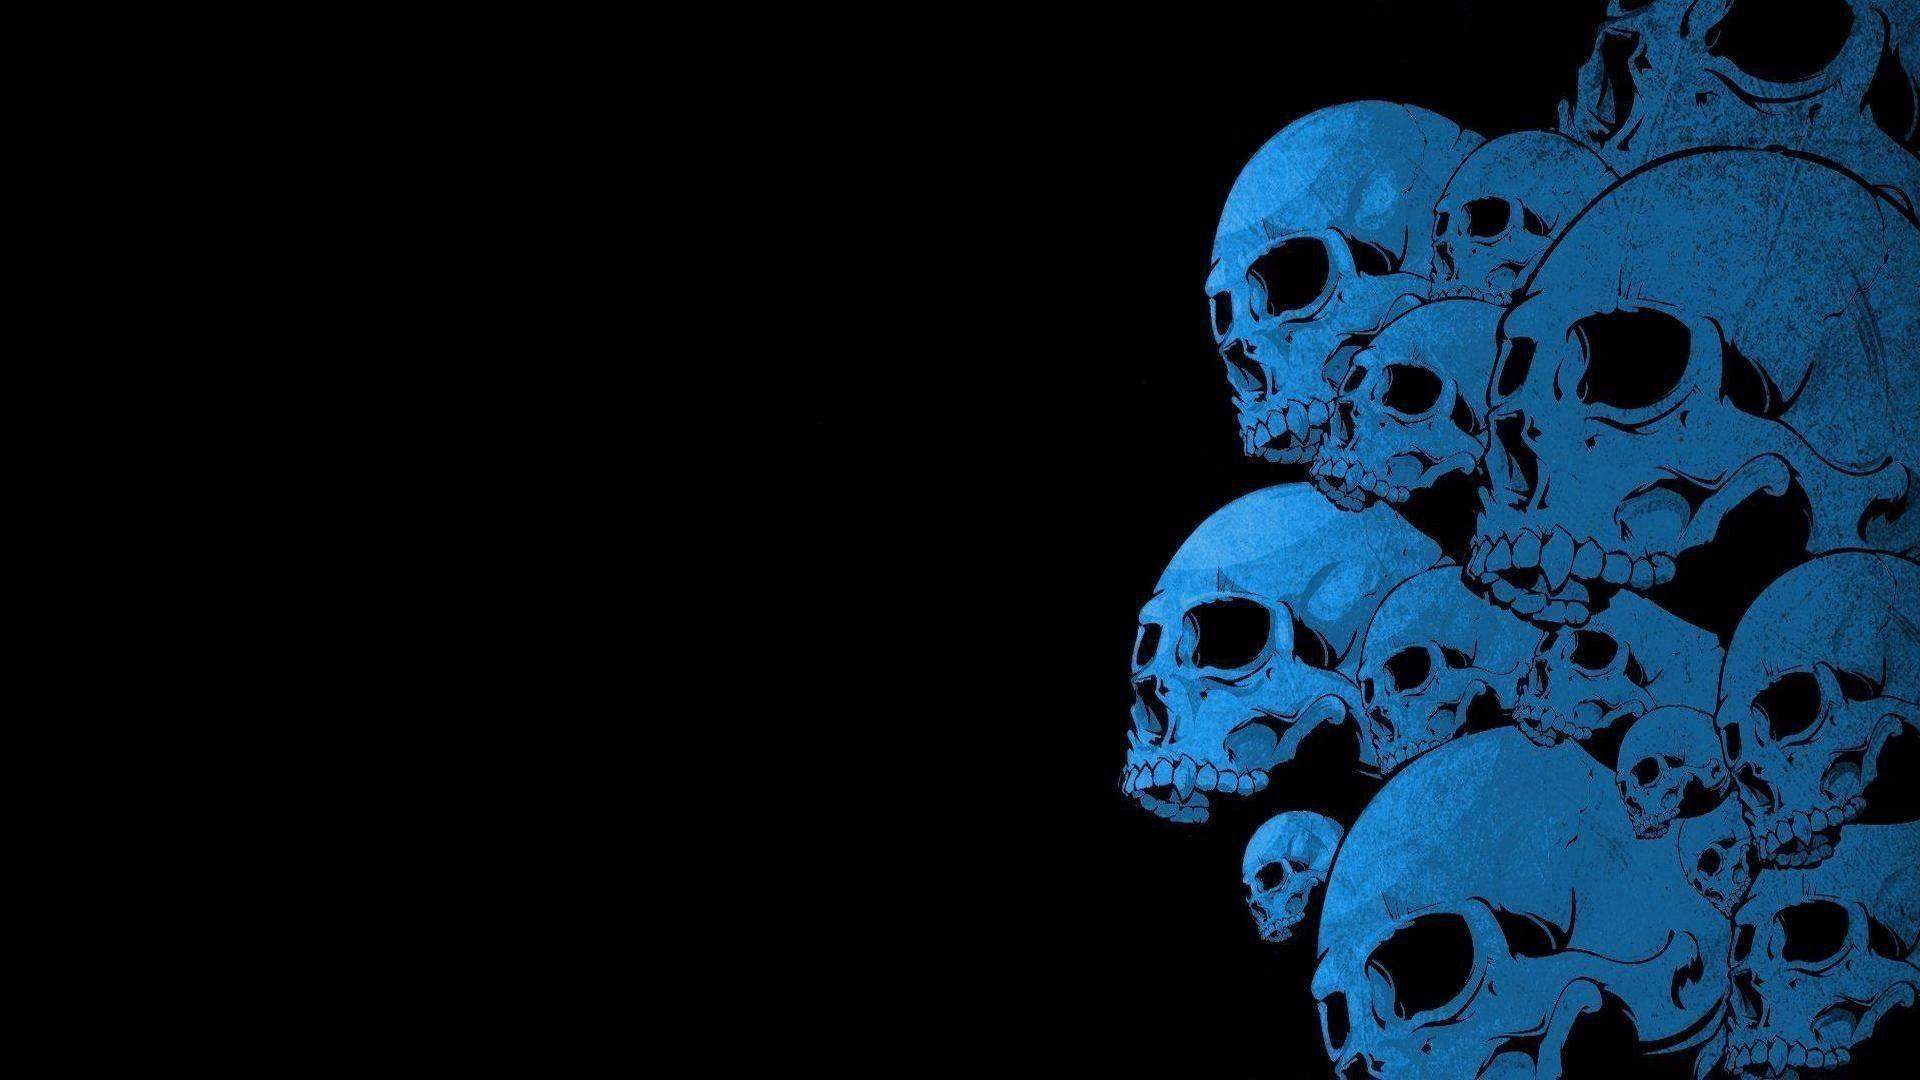 Punisher Skull Graphics. Punisher Skull Pics